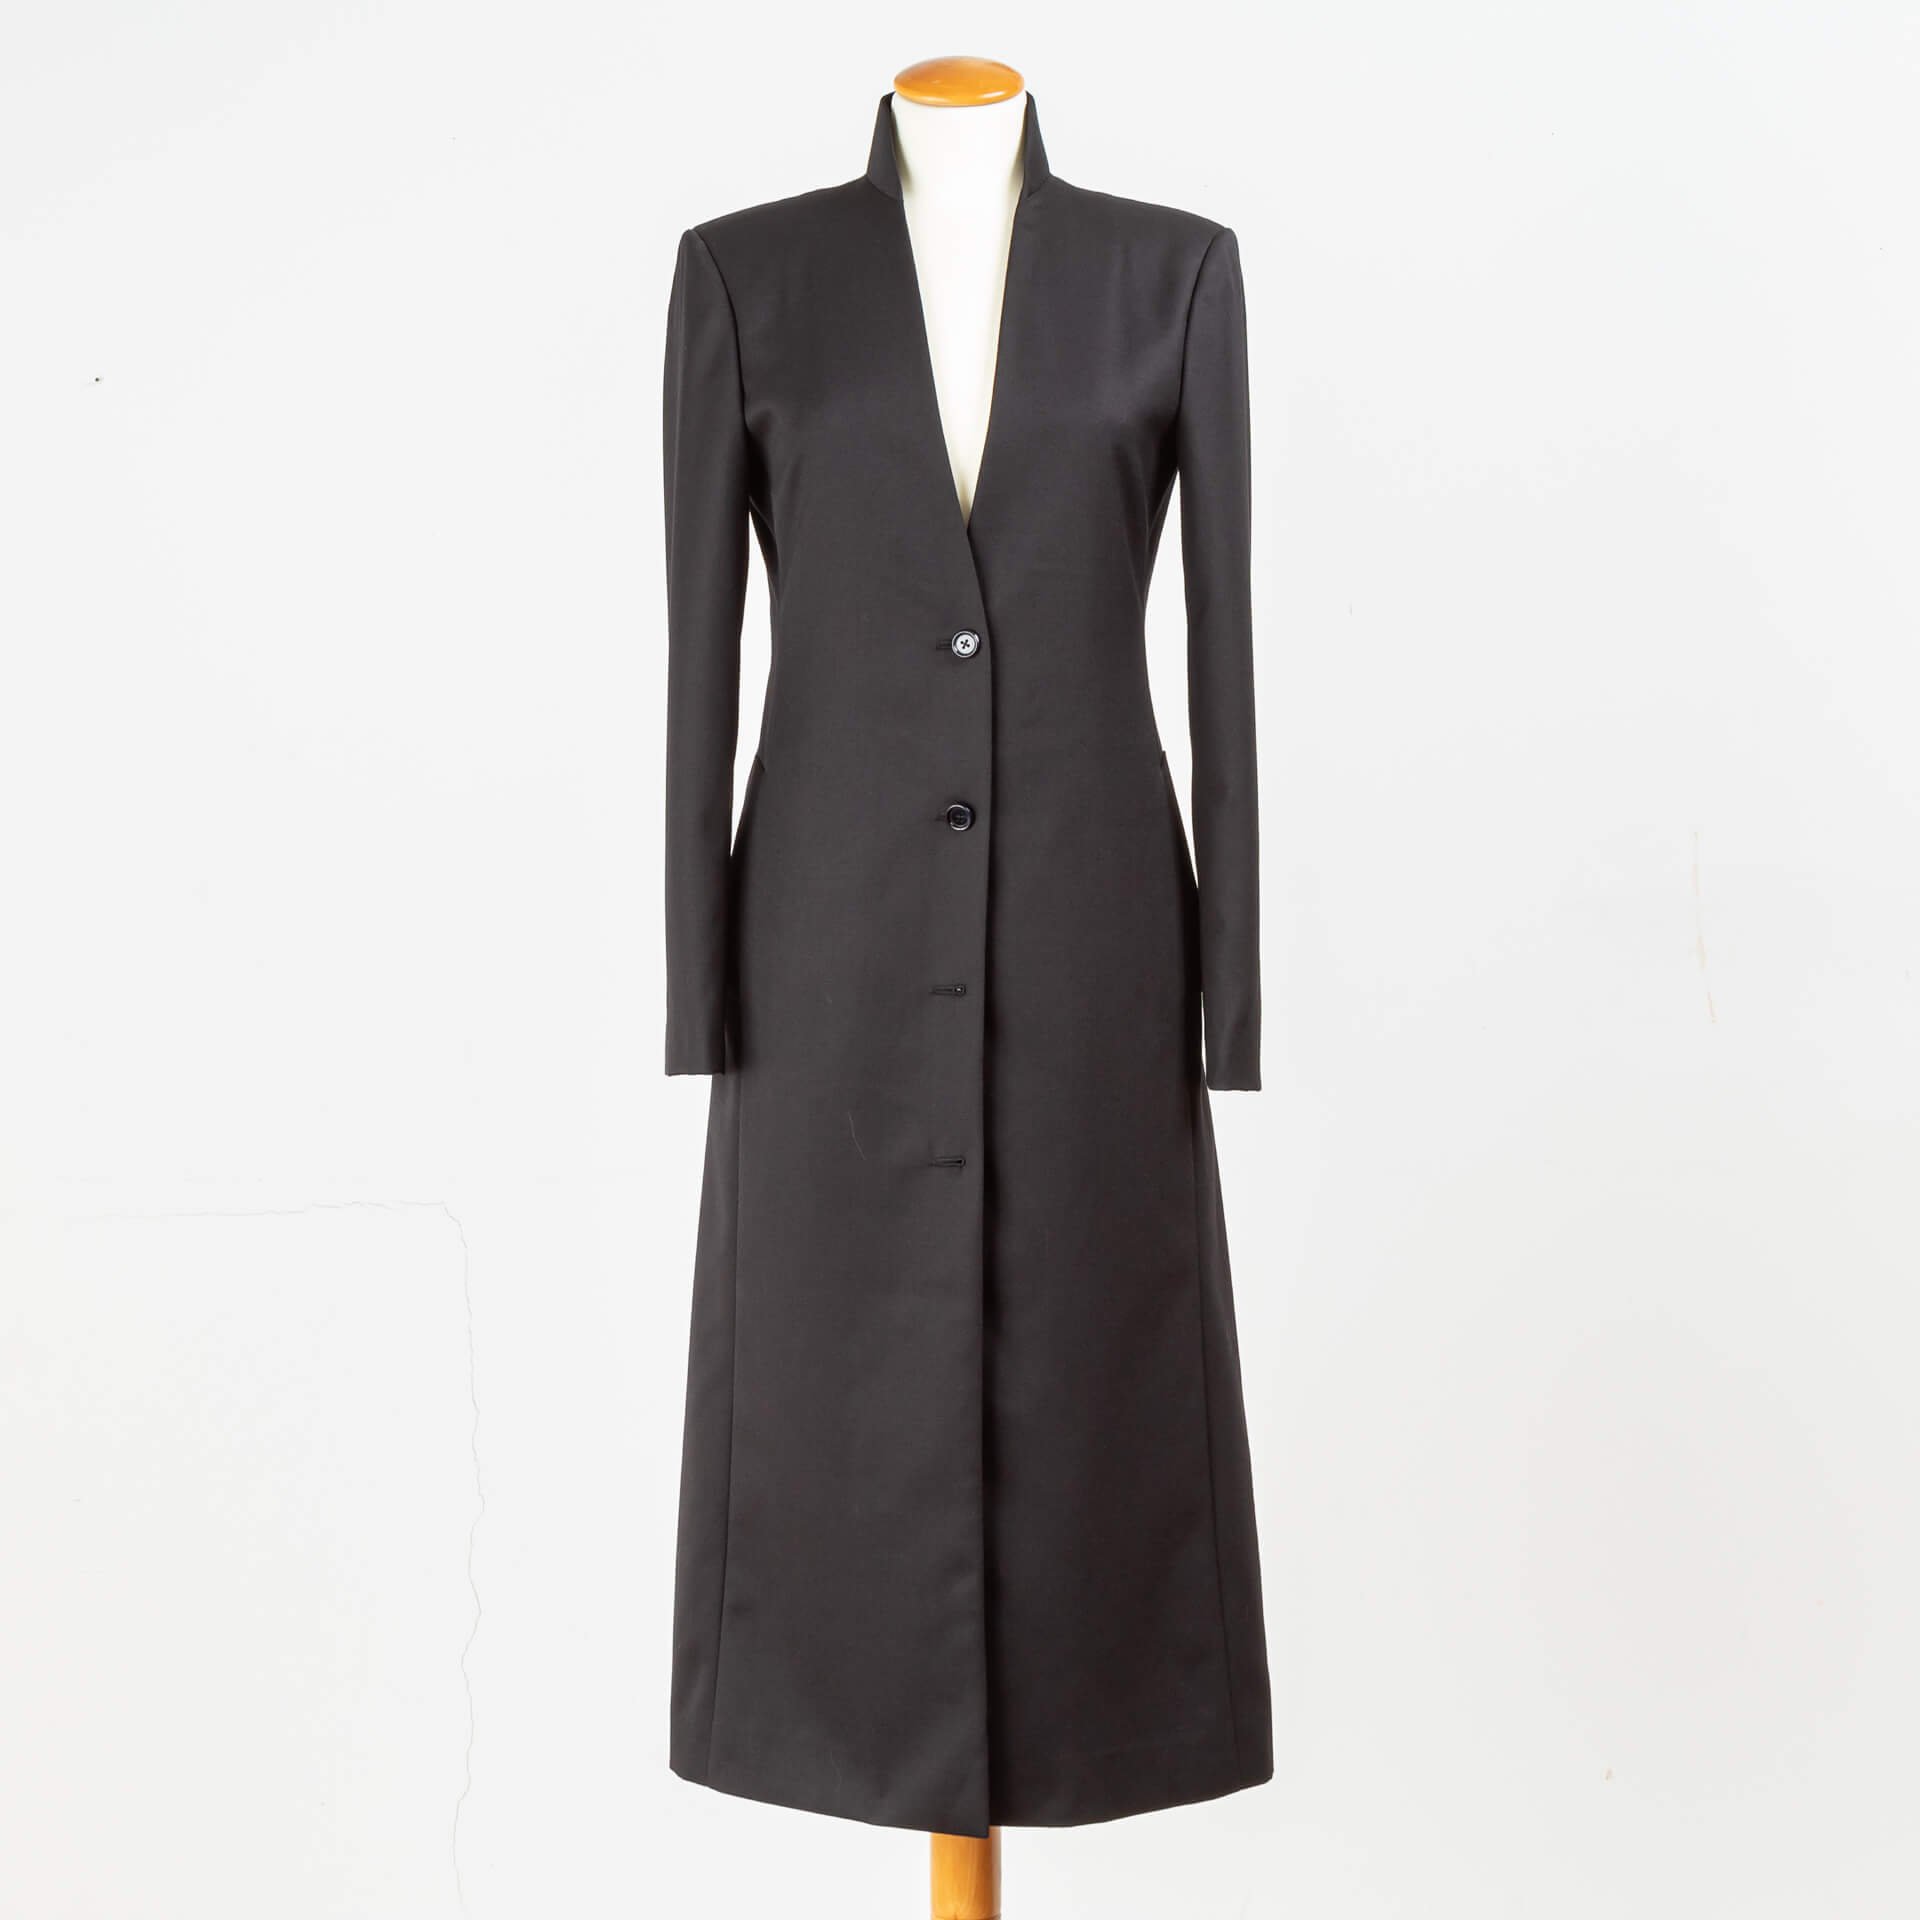 Ladies Coat Wool Black Bespoke Tailored.